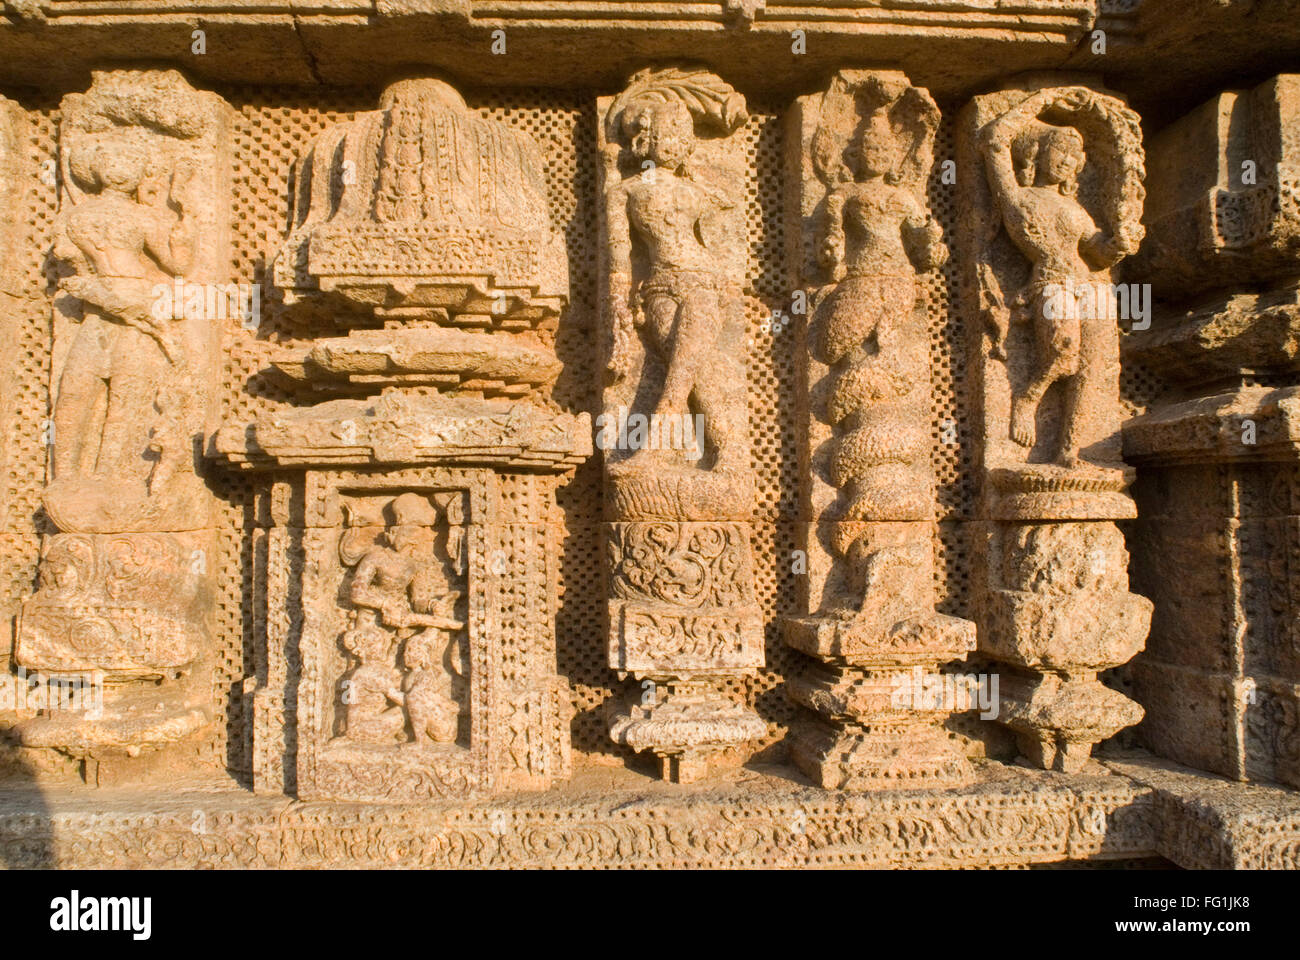 Naga halb Mensch halb Schlange Kreatur der hinduistischen Mythologie erscheint, die von Tänzern und Skulptur Sonne Tempel komplex Konarak Orissa Odisha Indien flankiert Stockfoto